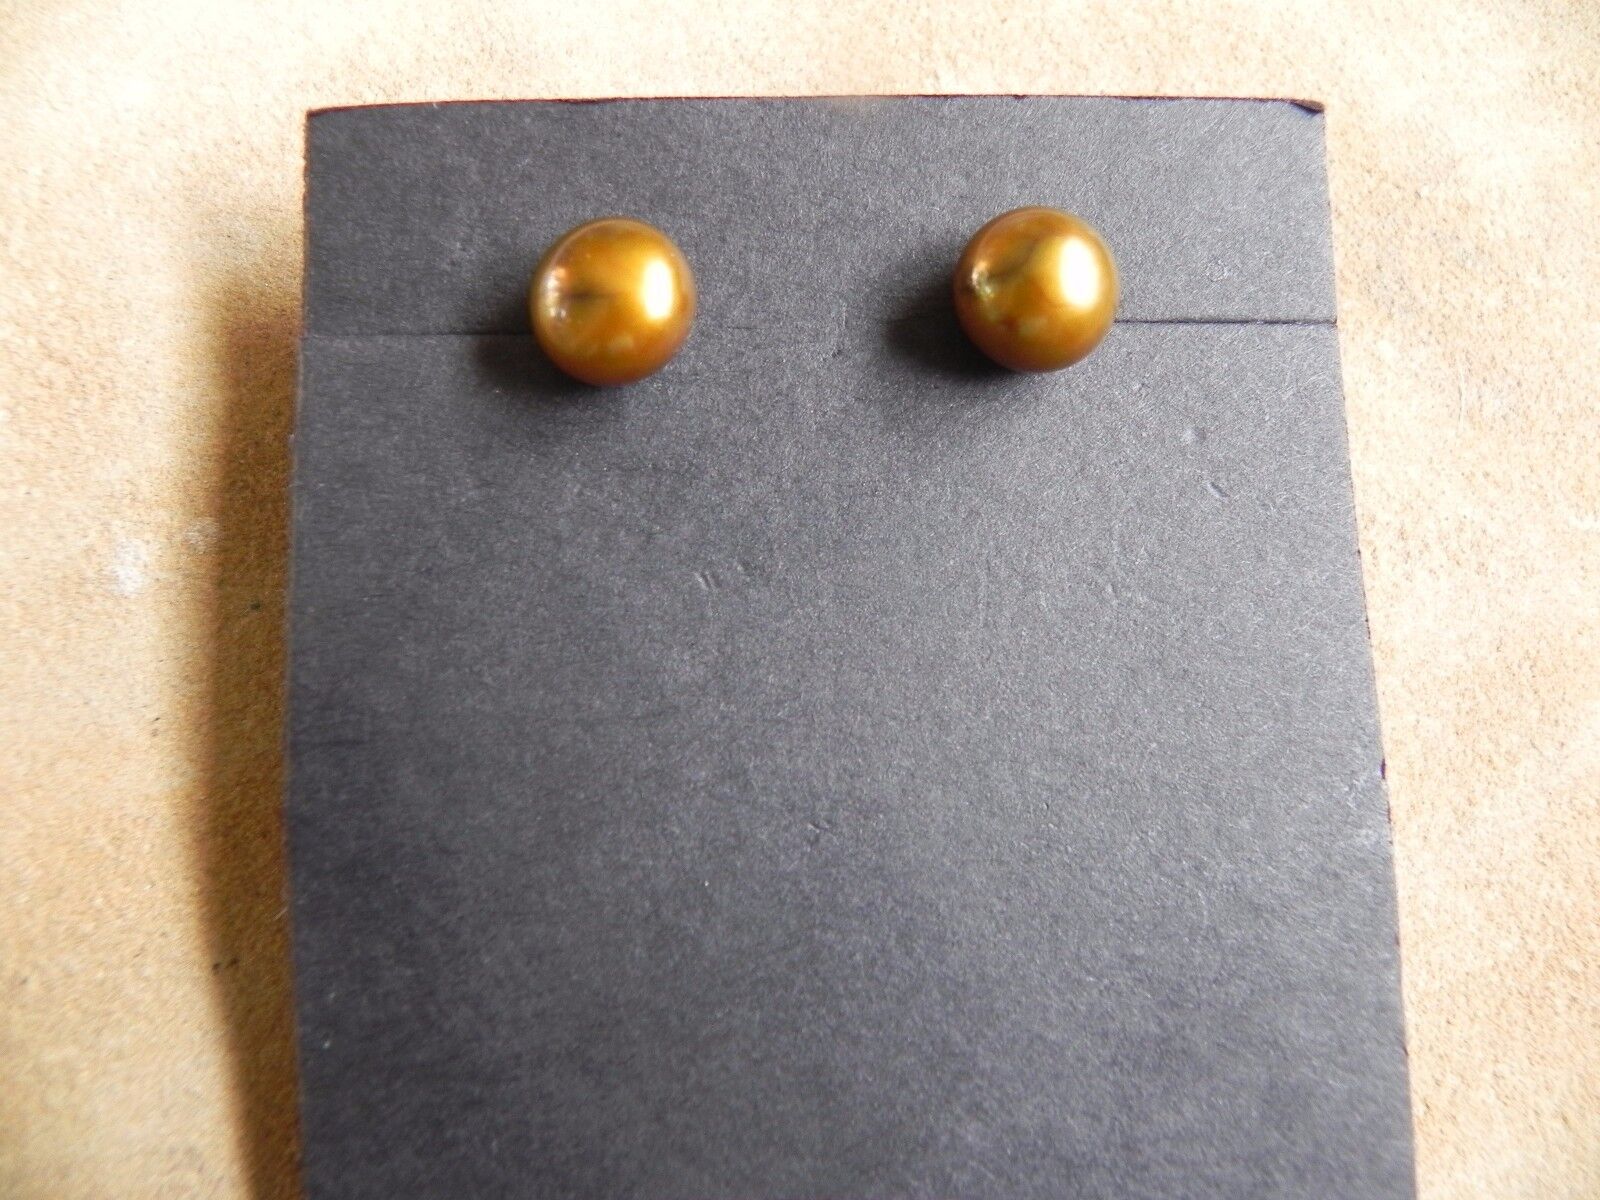 Rust Brown Cultured Pearls Sterling Silver Post Stud Earrings